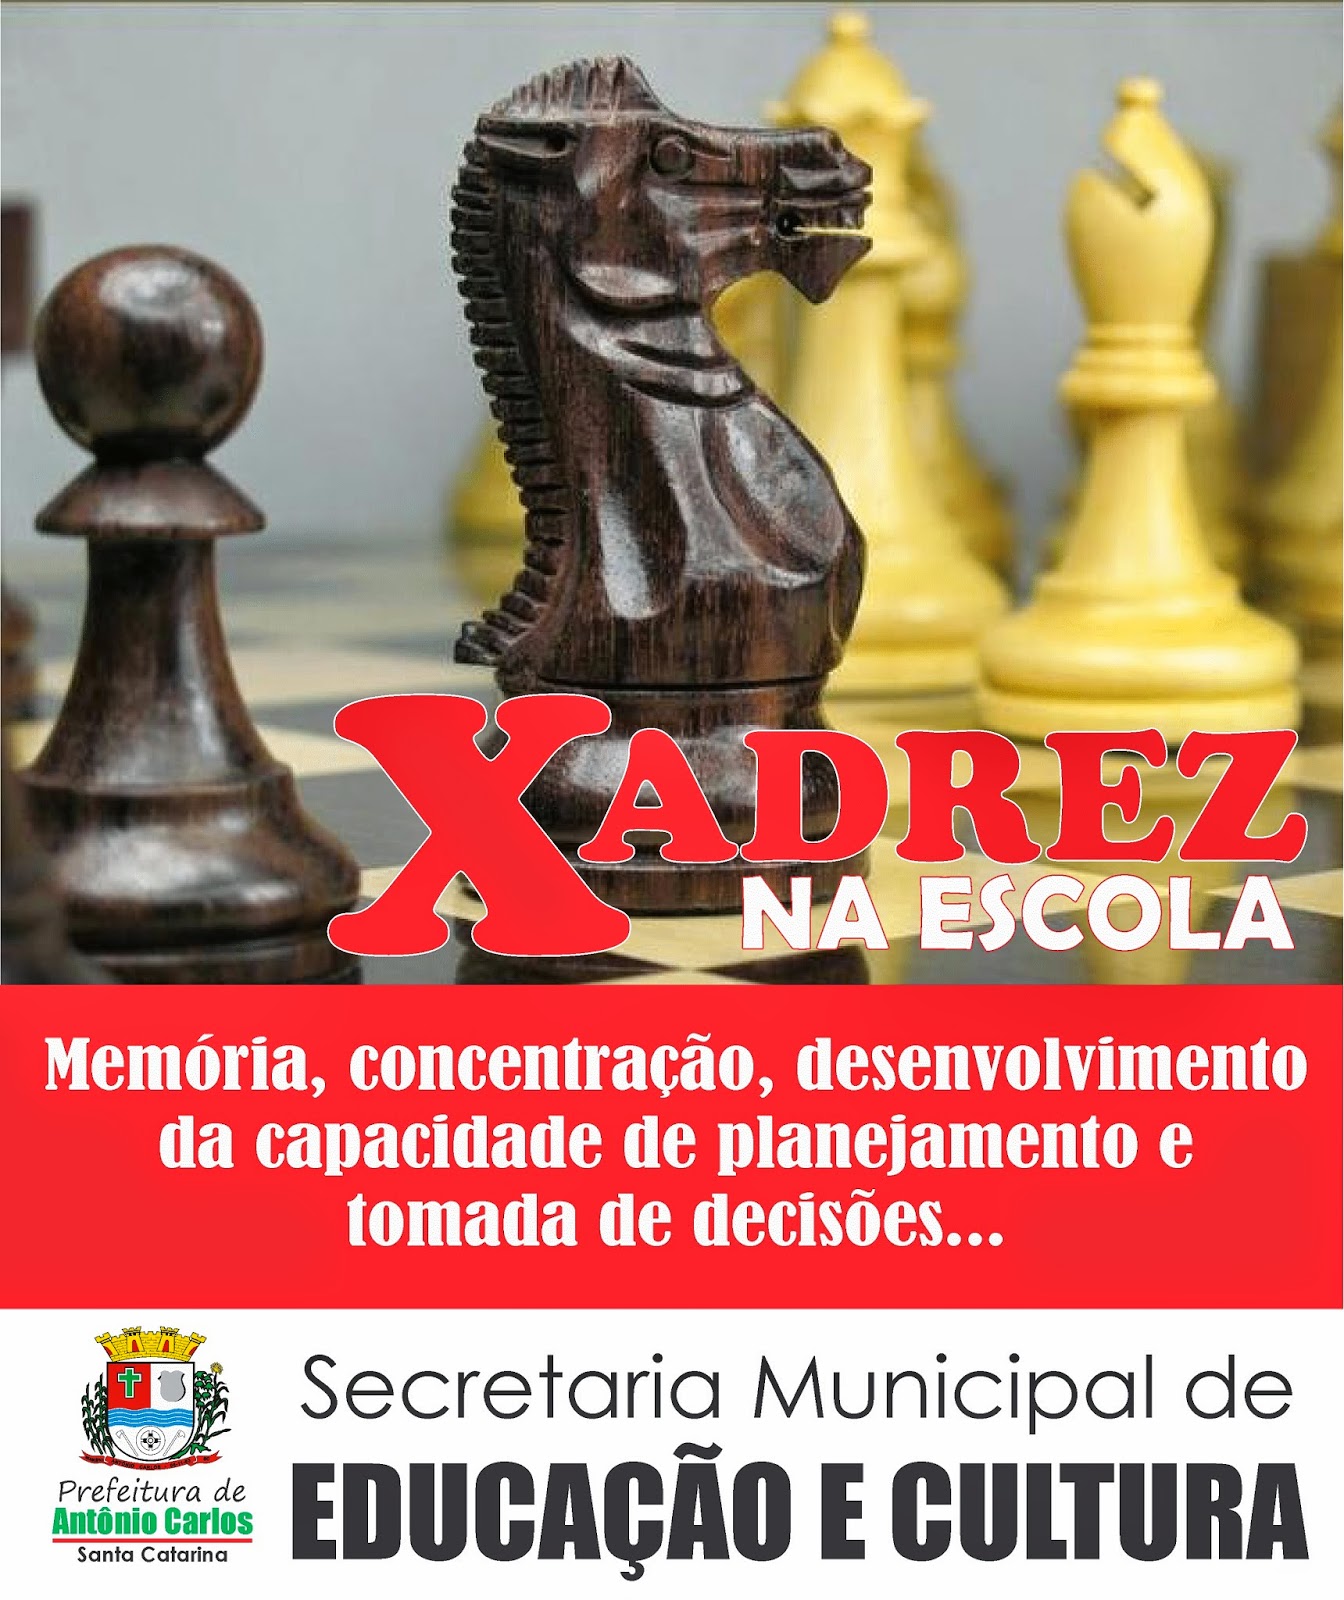 Segunda etapa do IV Circuito de Xadrez Online será nesta sexta-feira   Secretaria Municipal de Educação - Secretaria Municipal de Educação